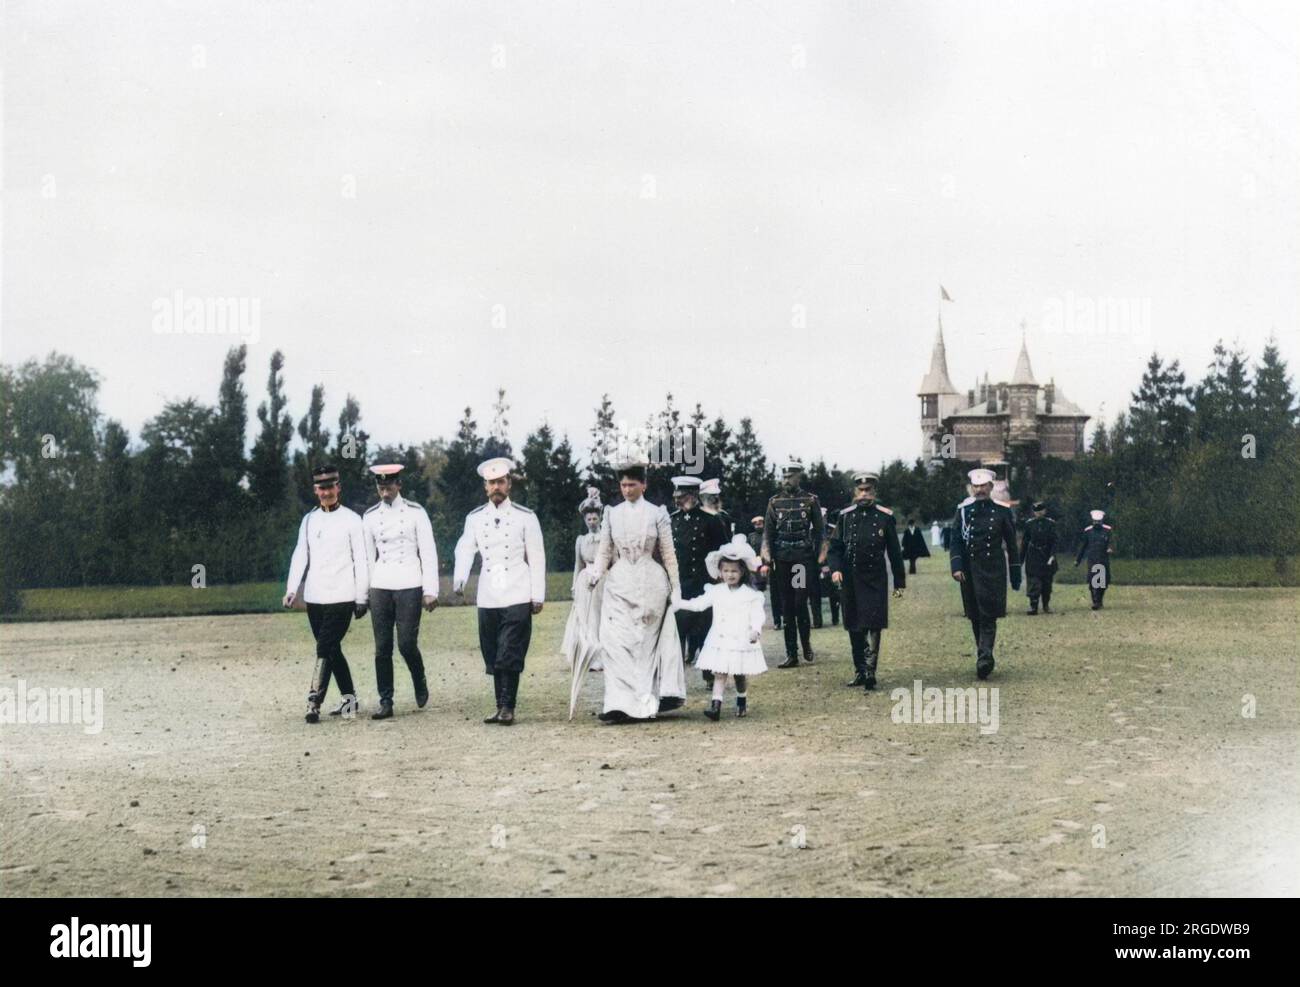 Zar Nicholas II. Von Russland spaziert durch die Landschaft von Krasnoe Selo in einem großen Gefolge, zu dem seine Frau Alexandra Feodorowna, eine seiner Töchter, andere Familienmitglieder und mehrere Beamte gehören. Stockfoto